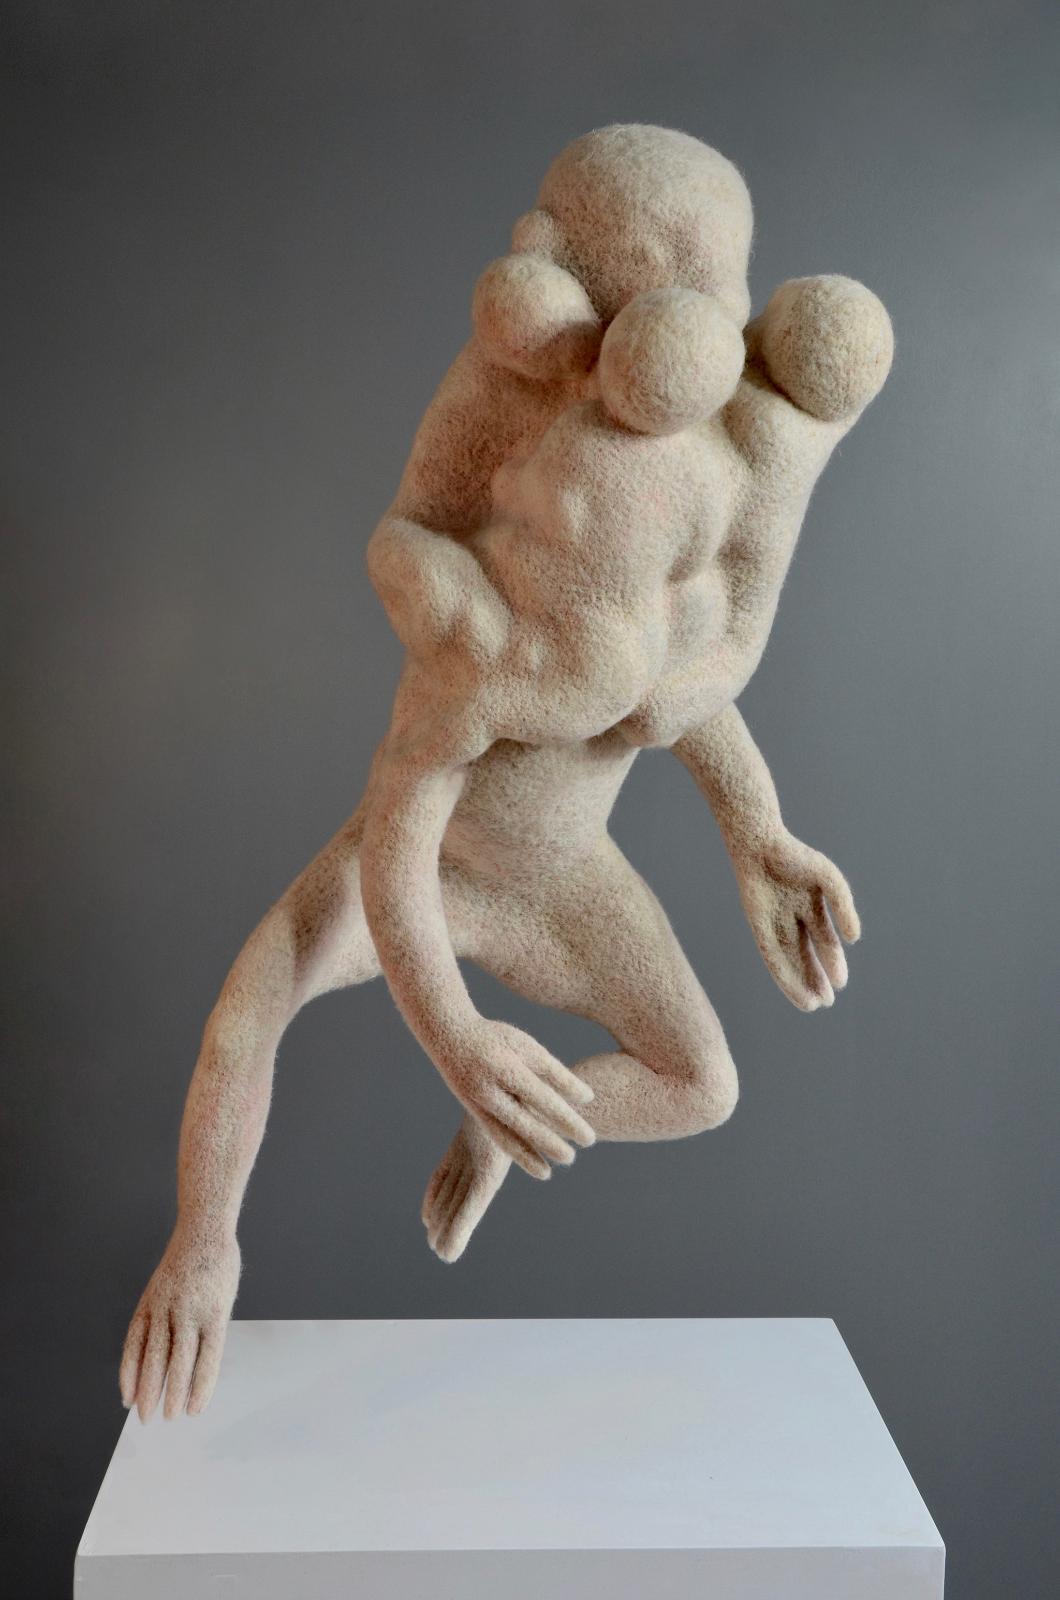 Stefanie Ehrenfried, Absprung, 2012, Schafwolle nadelgefilzt, 52 cm x 84 cm x 34 cm, Preis auf Anfrage, Galerie Cyprian Brenner